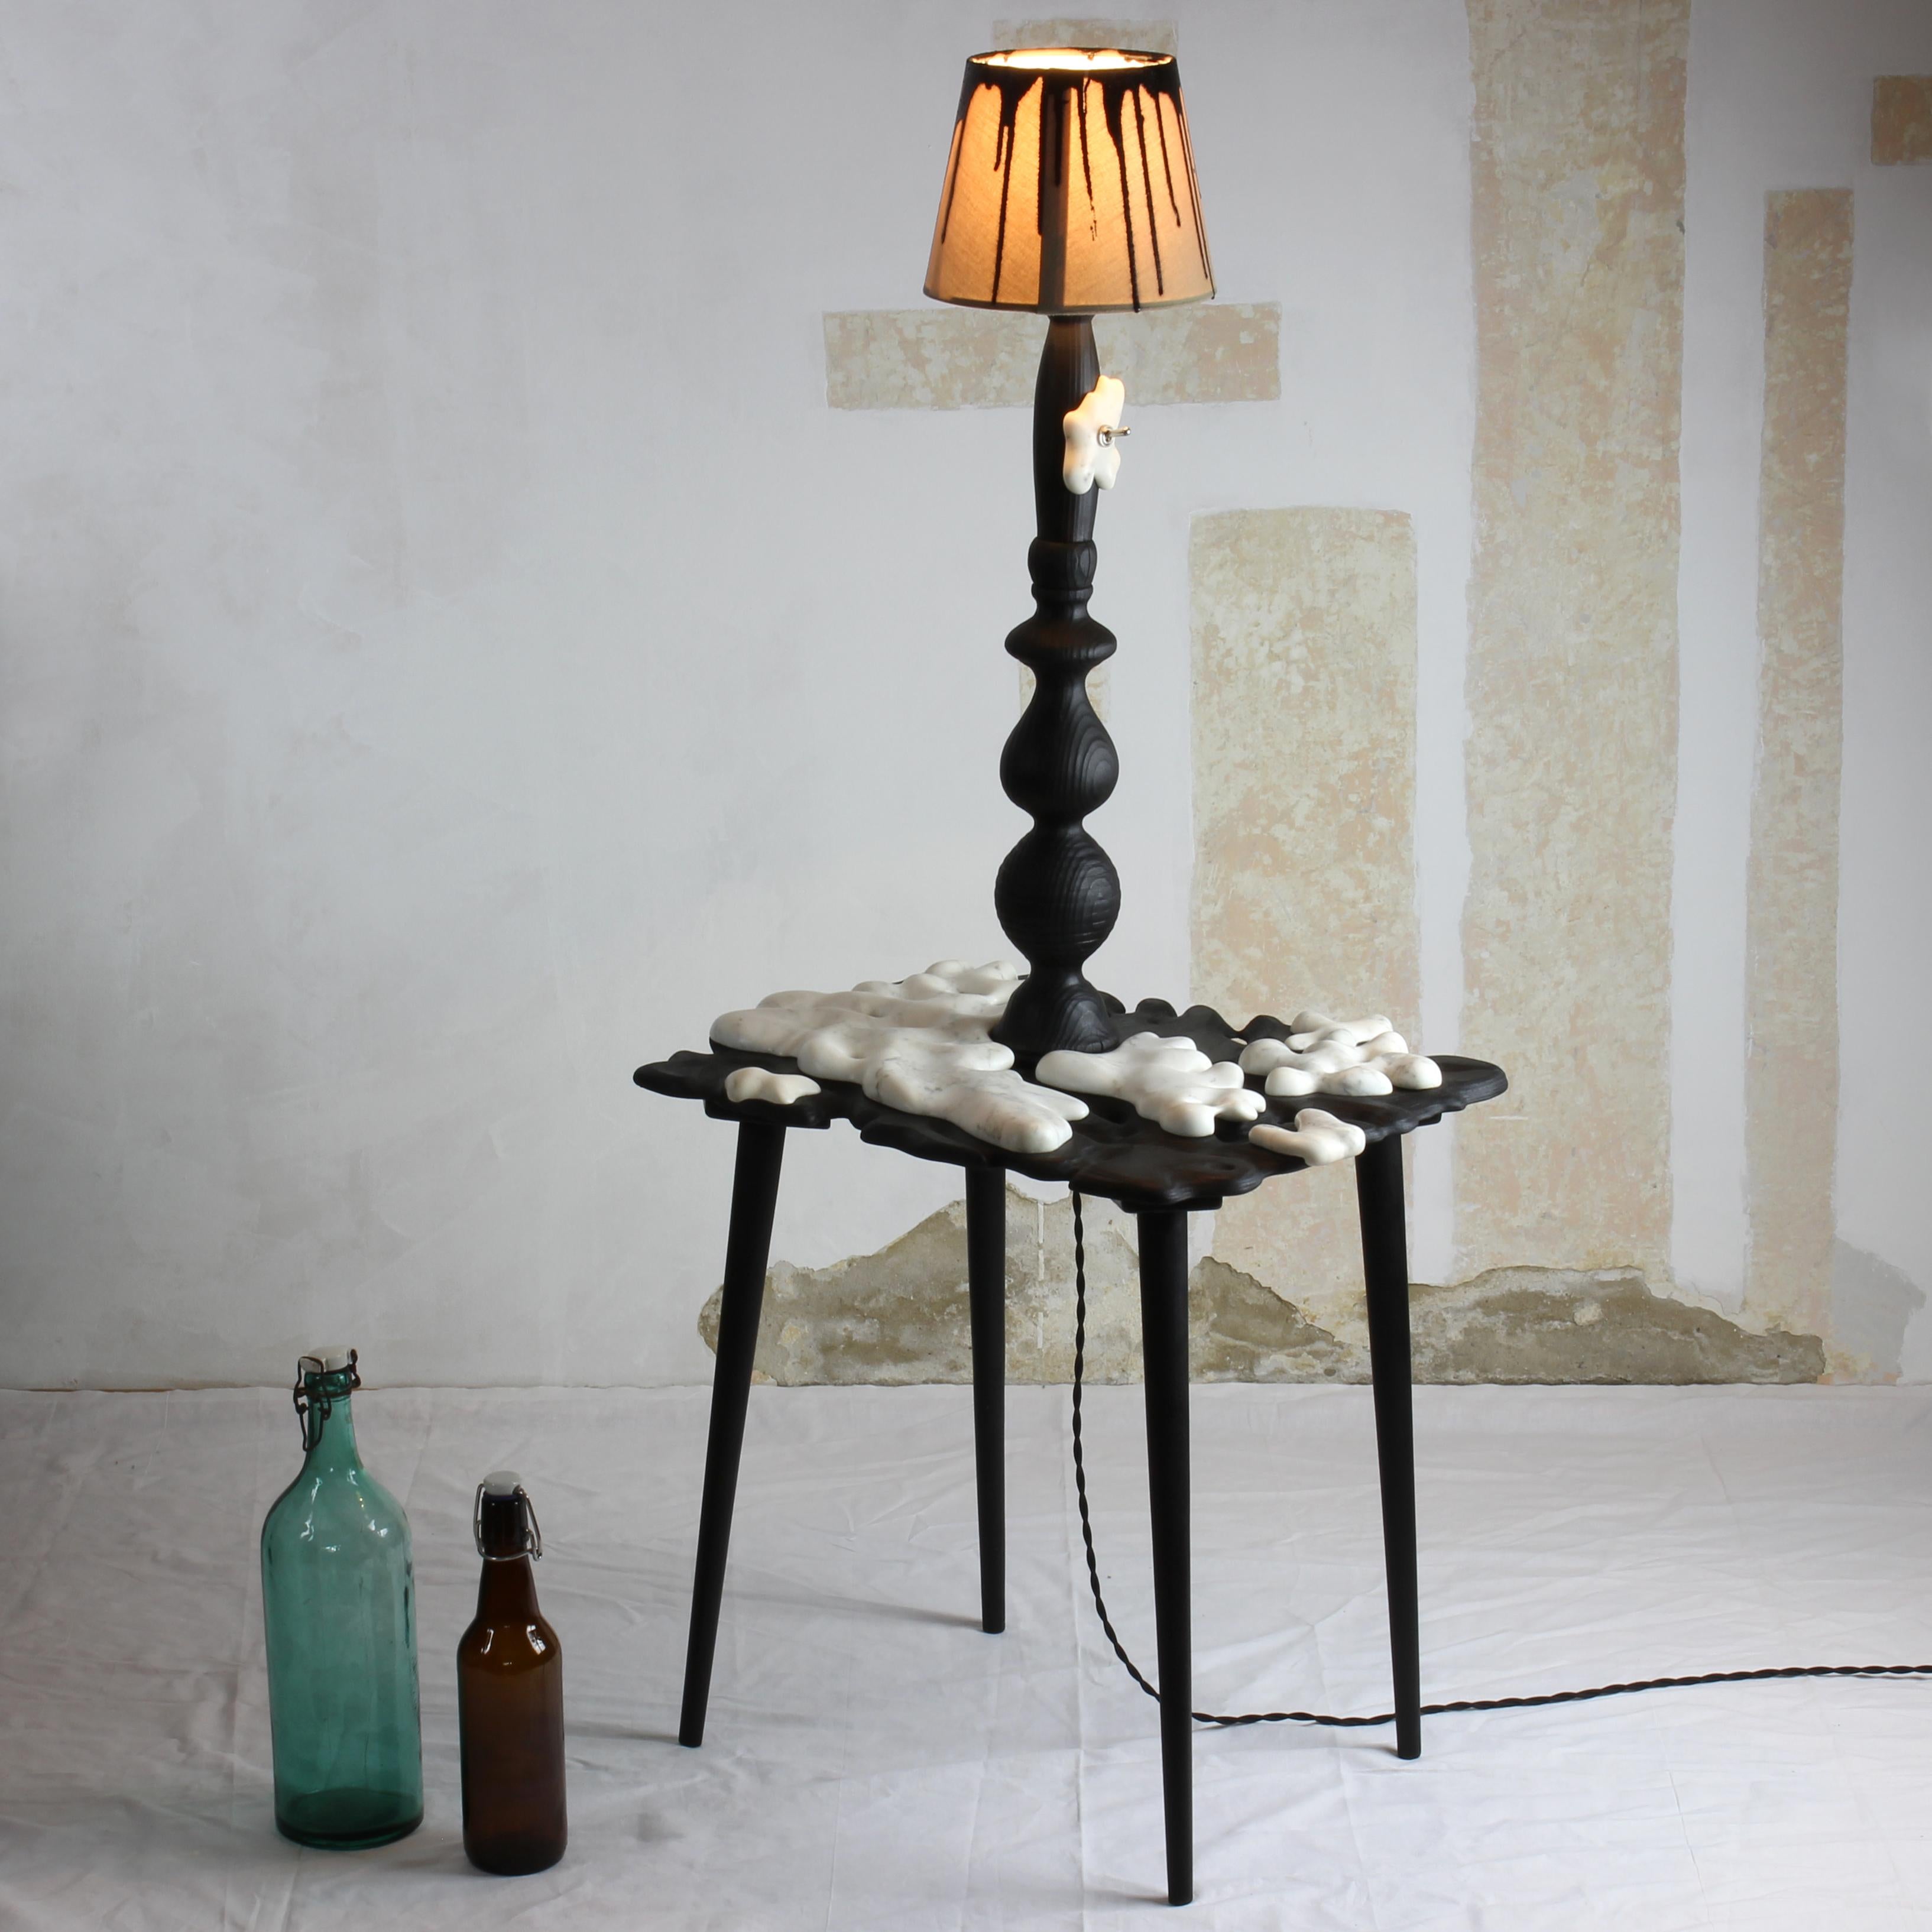 Design Collectional, sculpture d'art, éclairage d'ambiance, unique en son genre, ce lampadaire de forme organique est fabriqué à partir de pièces de mobilier en bois réutilisées (un tabouret de style milieu de siècle et une partie d'une lampe de